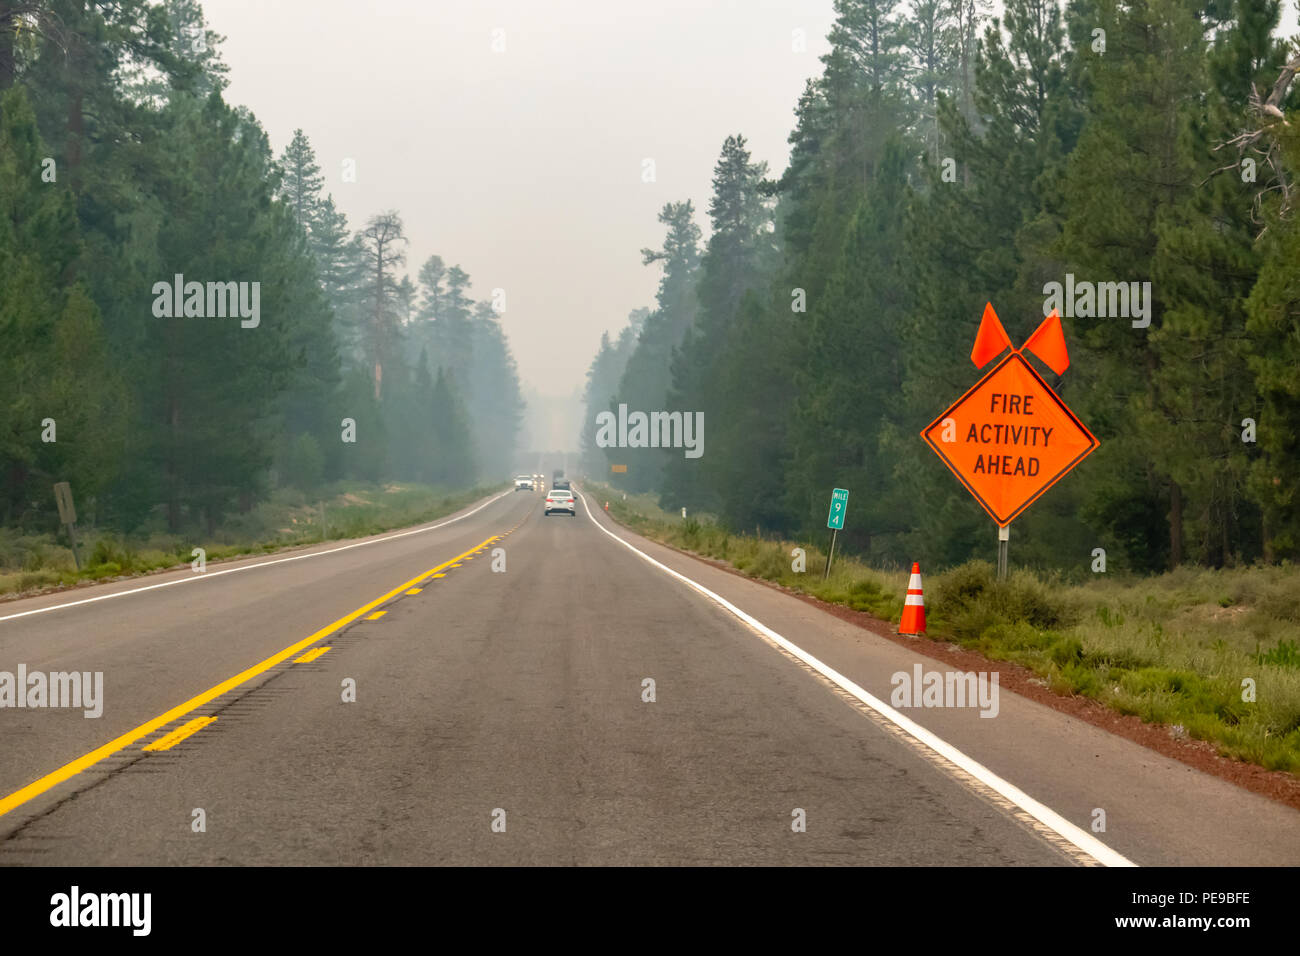 La autopista llena de humo de incendios en el sur de Oregon, firmar al lado de la carretera "actividad de incendios por delante". Foto de stock